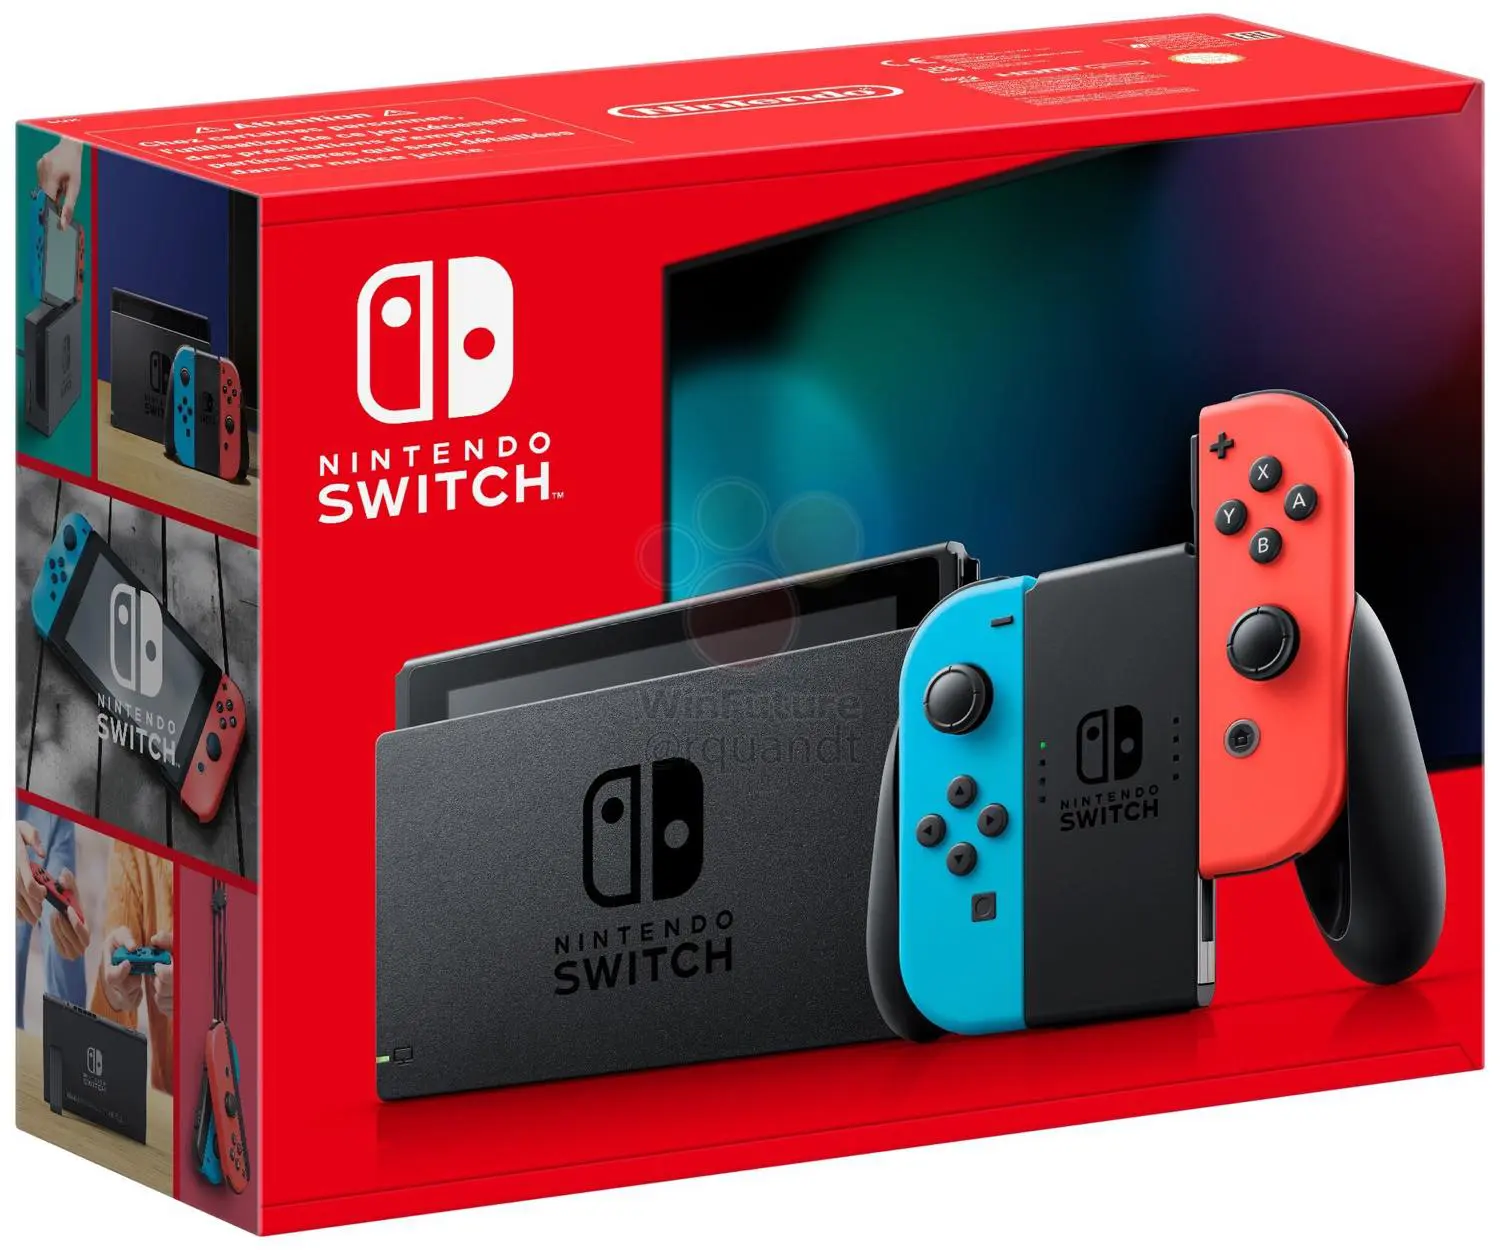 Nintendo Switch｣の小型化された新パッケージが明らかに | 気になる 